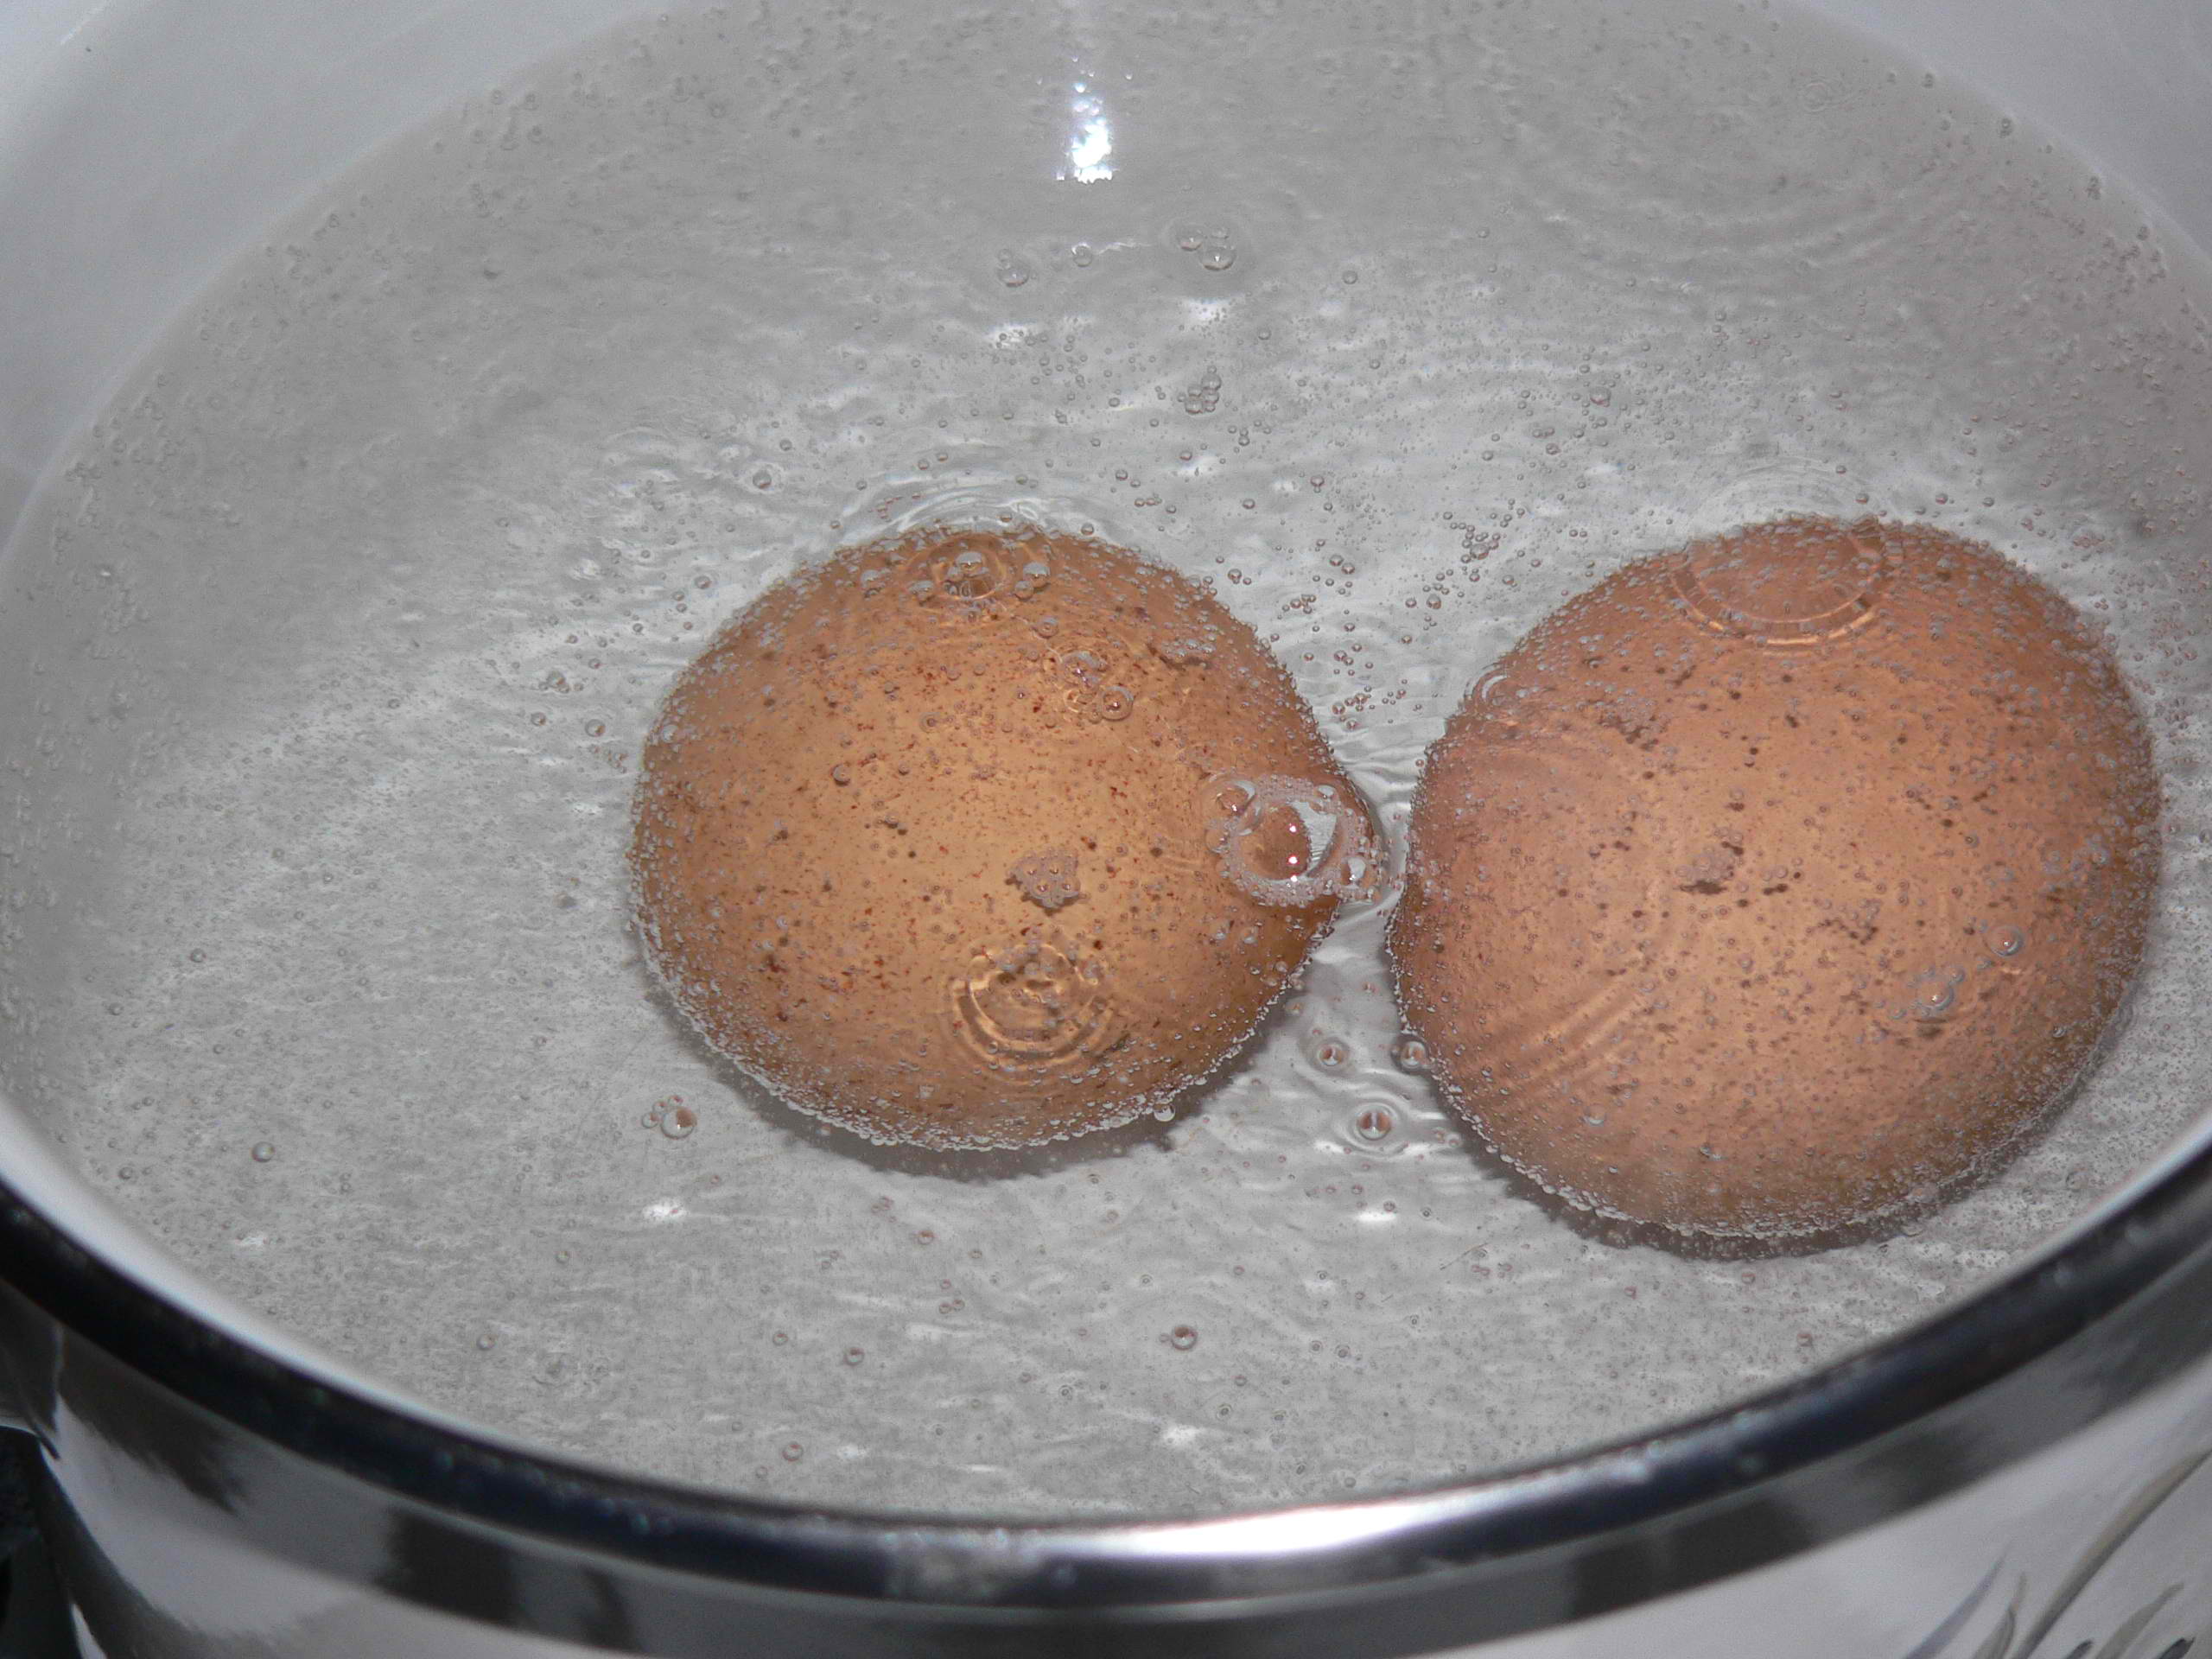 Как да сварим яйцата без да се напукат